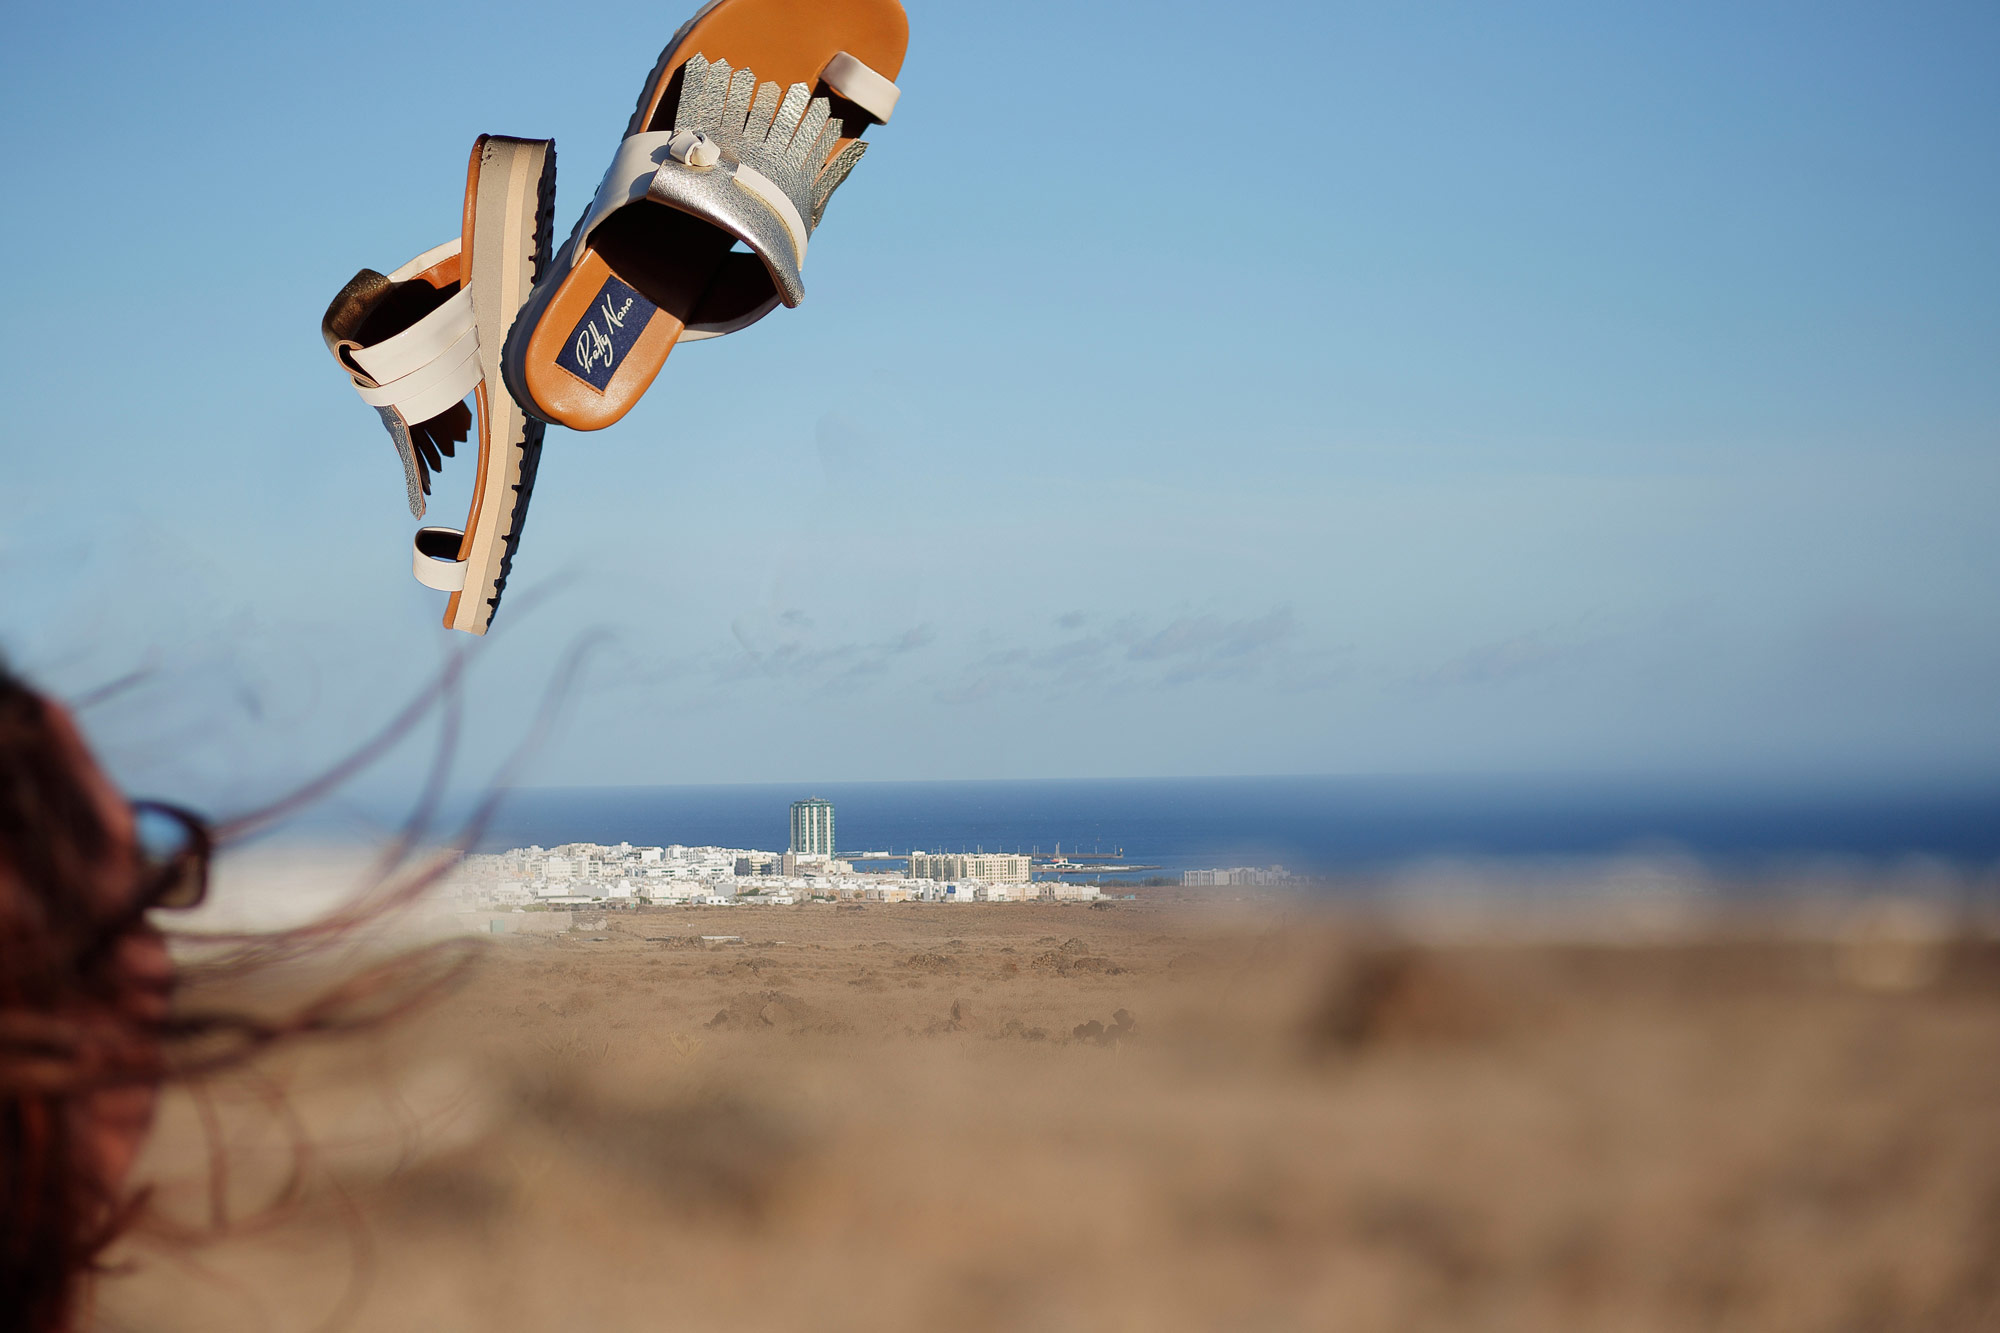 Lanzarote modella lancia in aria sandali argentio sullo sfondo deserto e mare